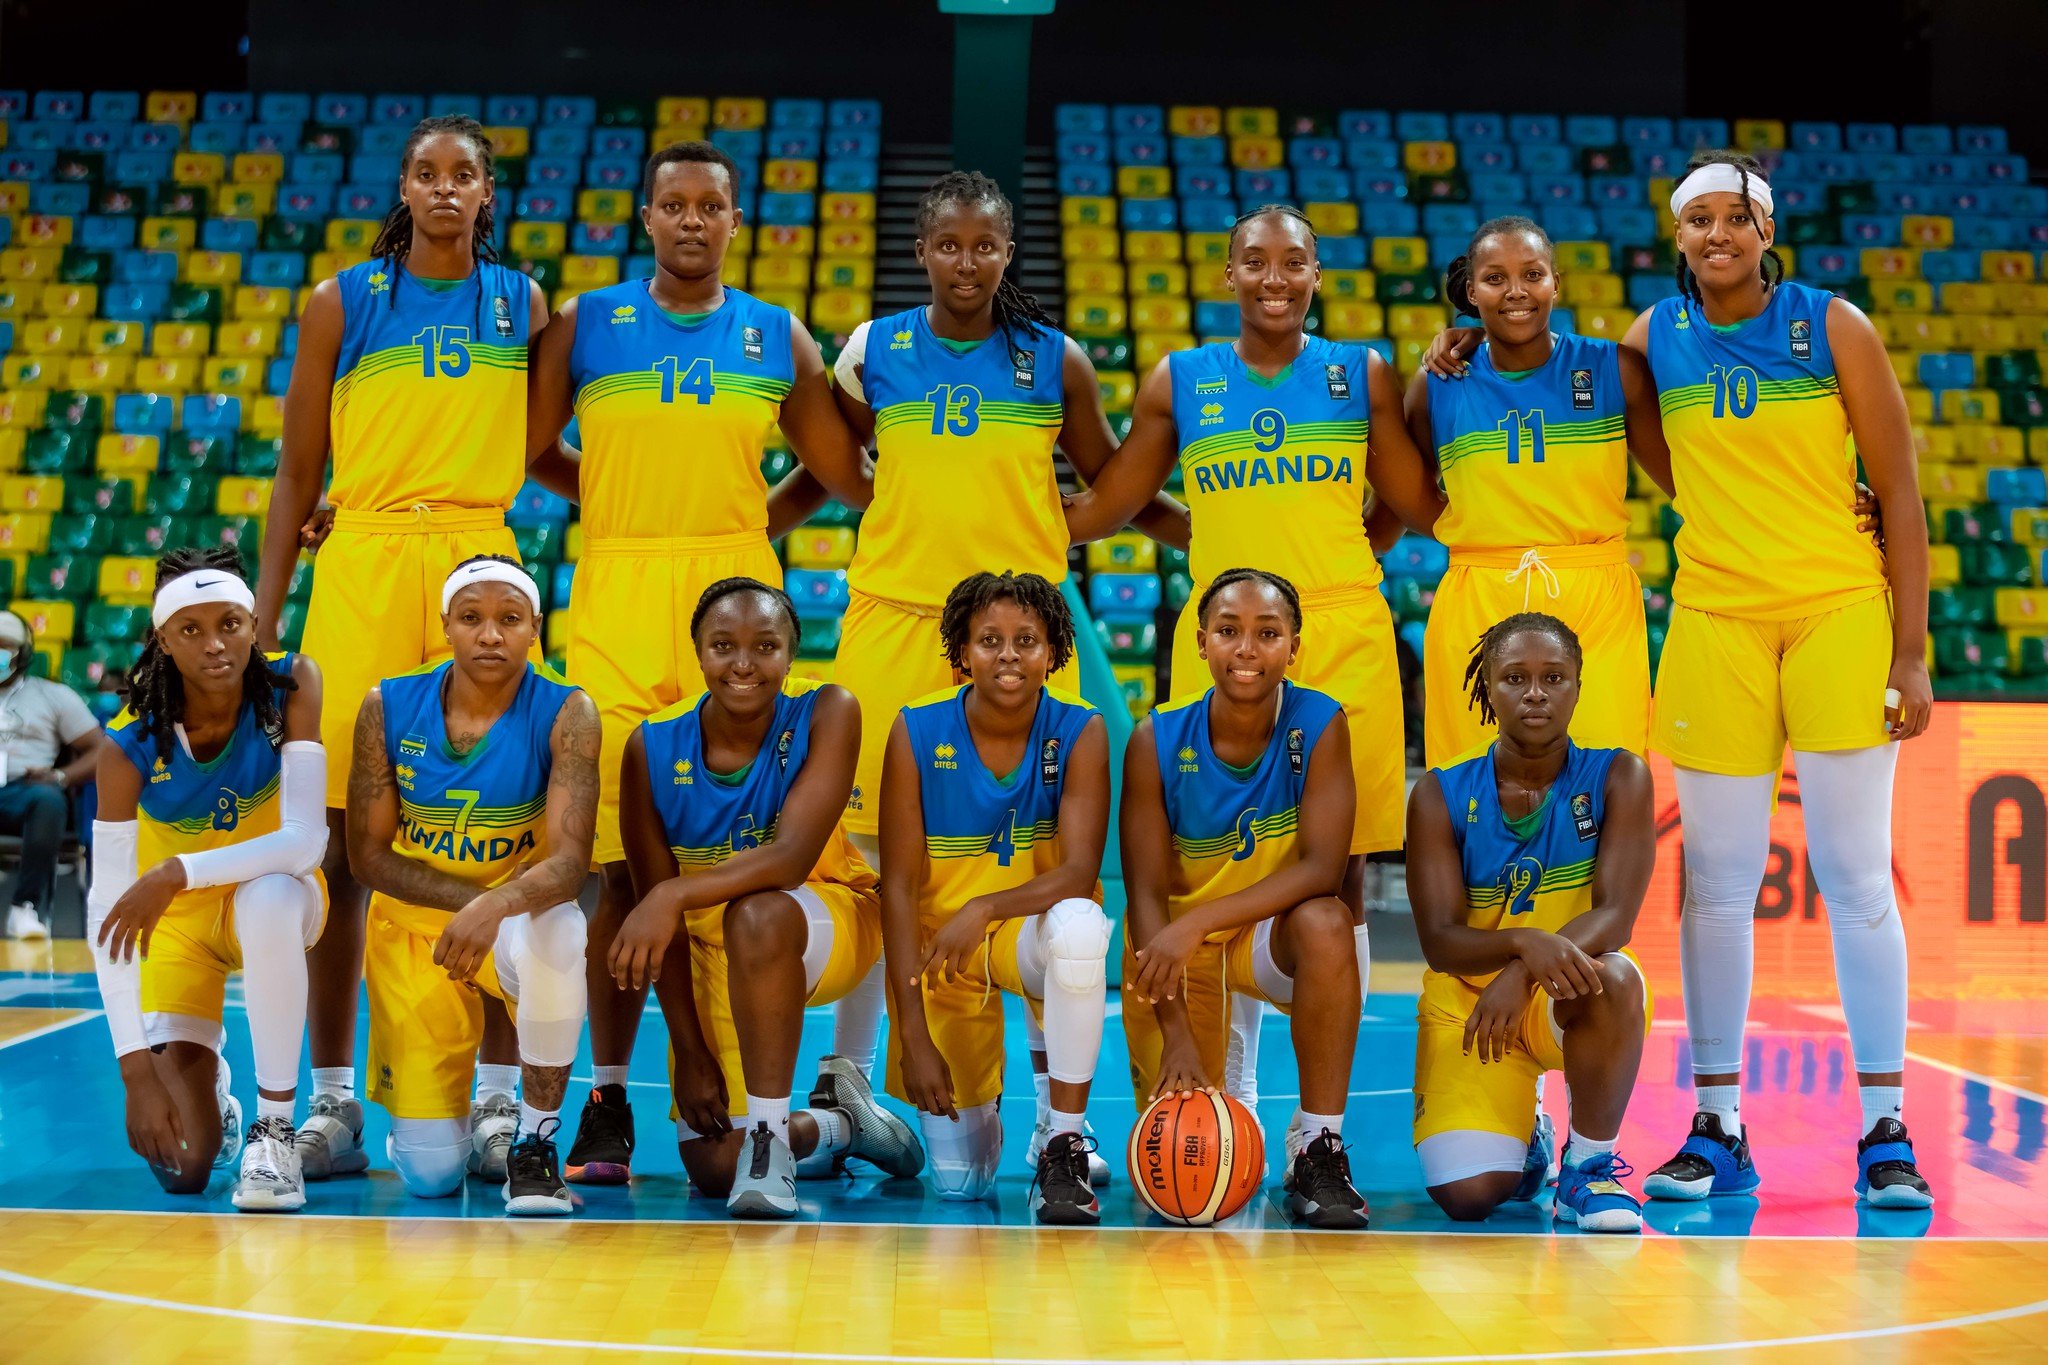 U Rwanda ni rwo ruzakira imikino ya nyuma ya FIBA women